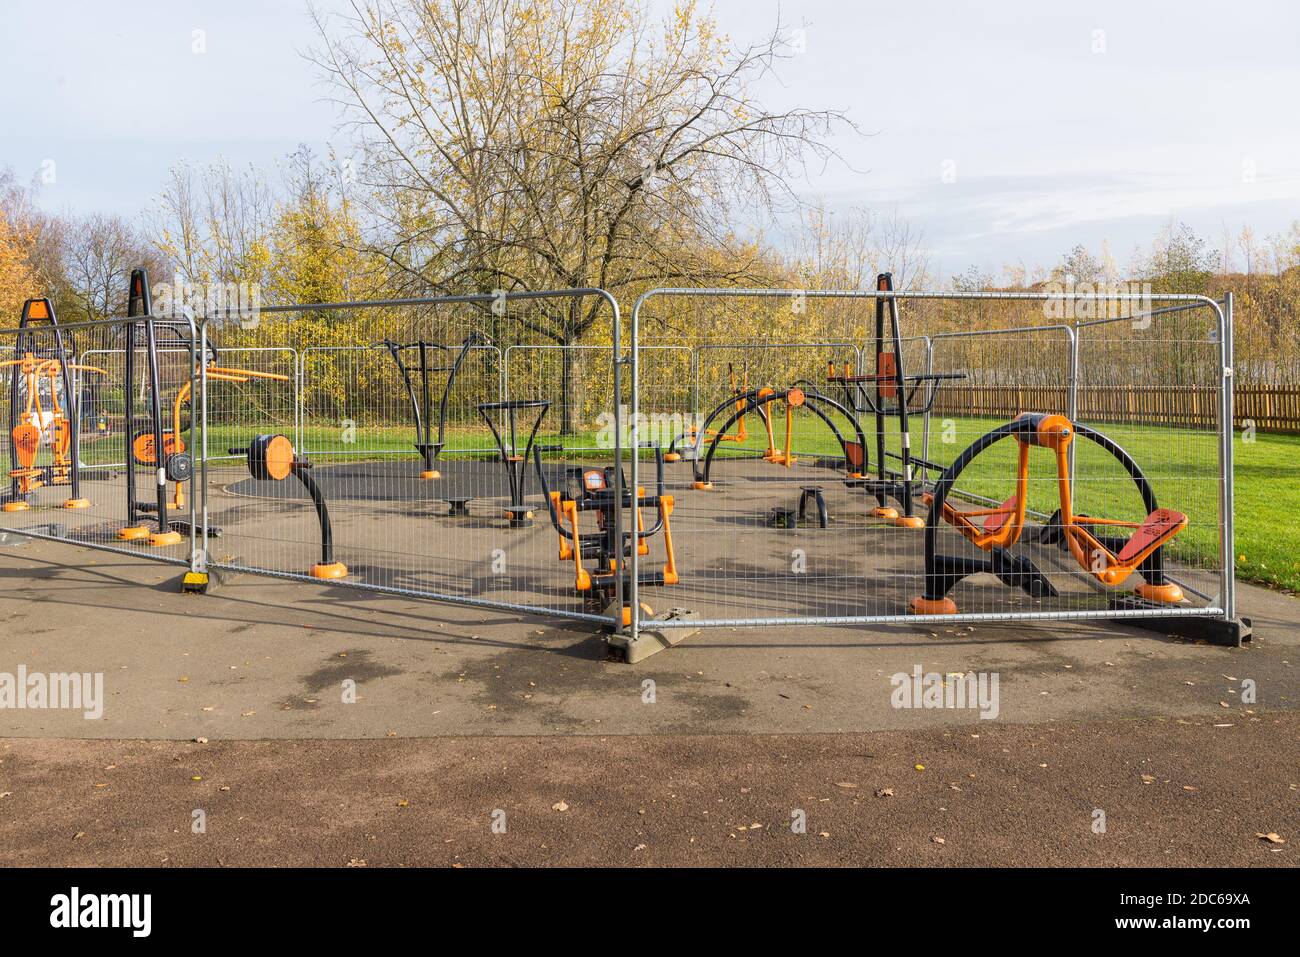 La salle de sport en plein air de Ruislip Lido, fermée et clôturée en raison de la pandémie du coronavirus. Ruislip, Angleterre, Royaume-Uni Banque D'Images